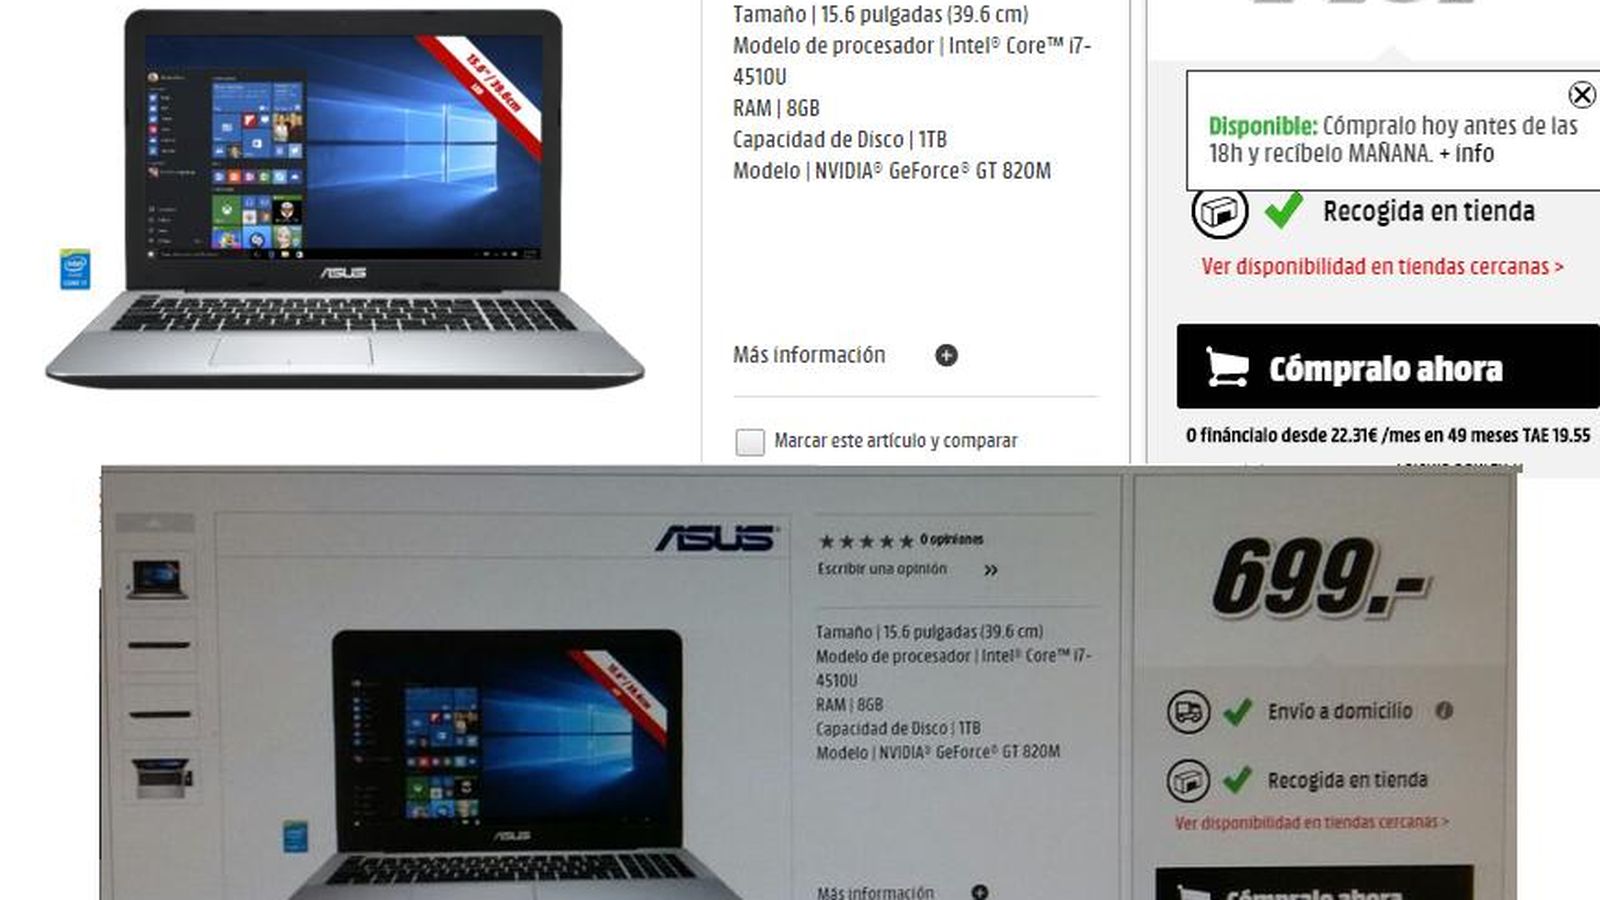 Foto: El precio de un ordenador Asus ha subido 50 euros. (Twitter)